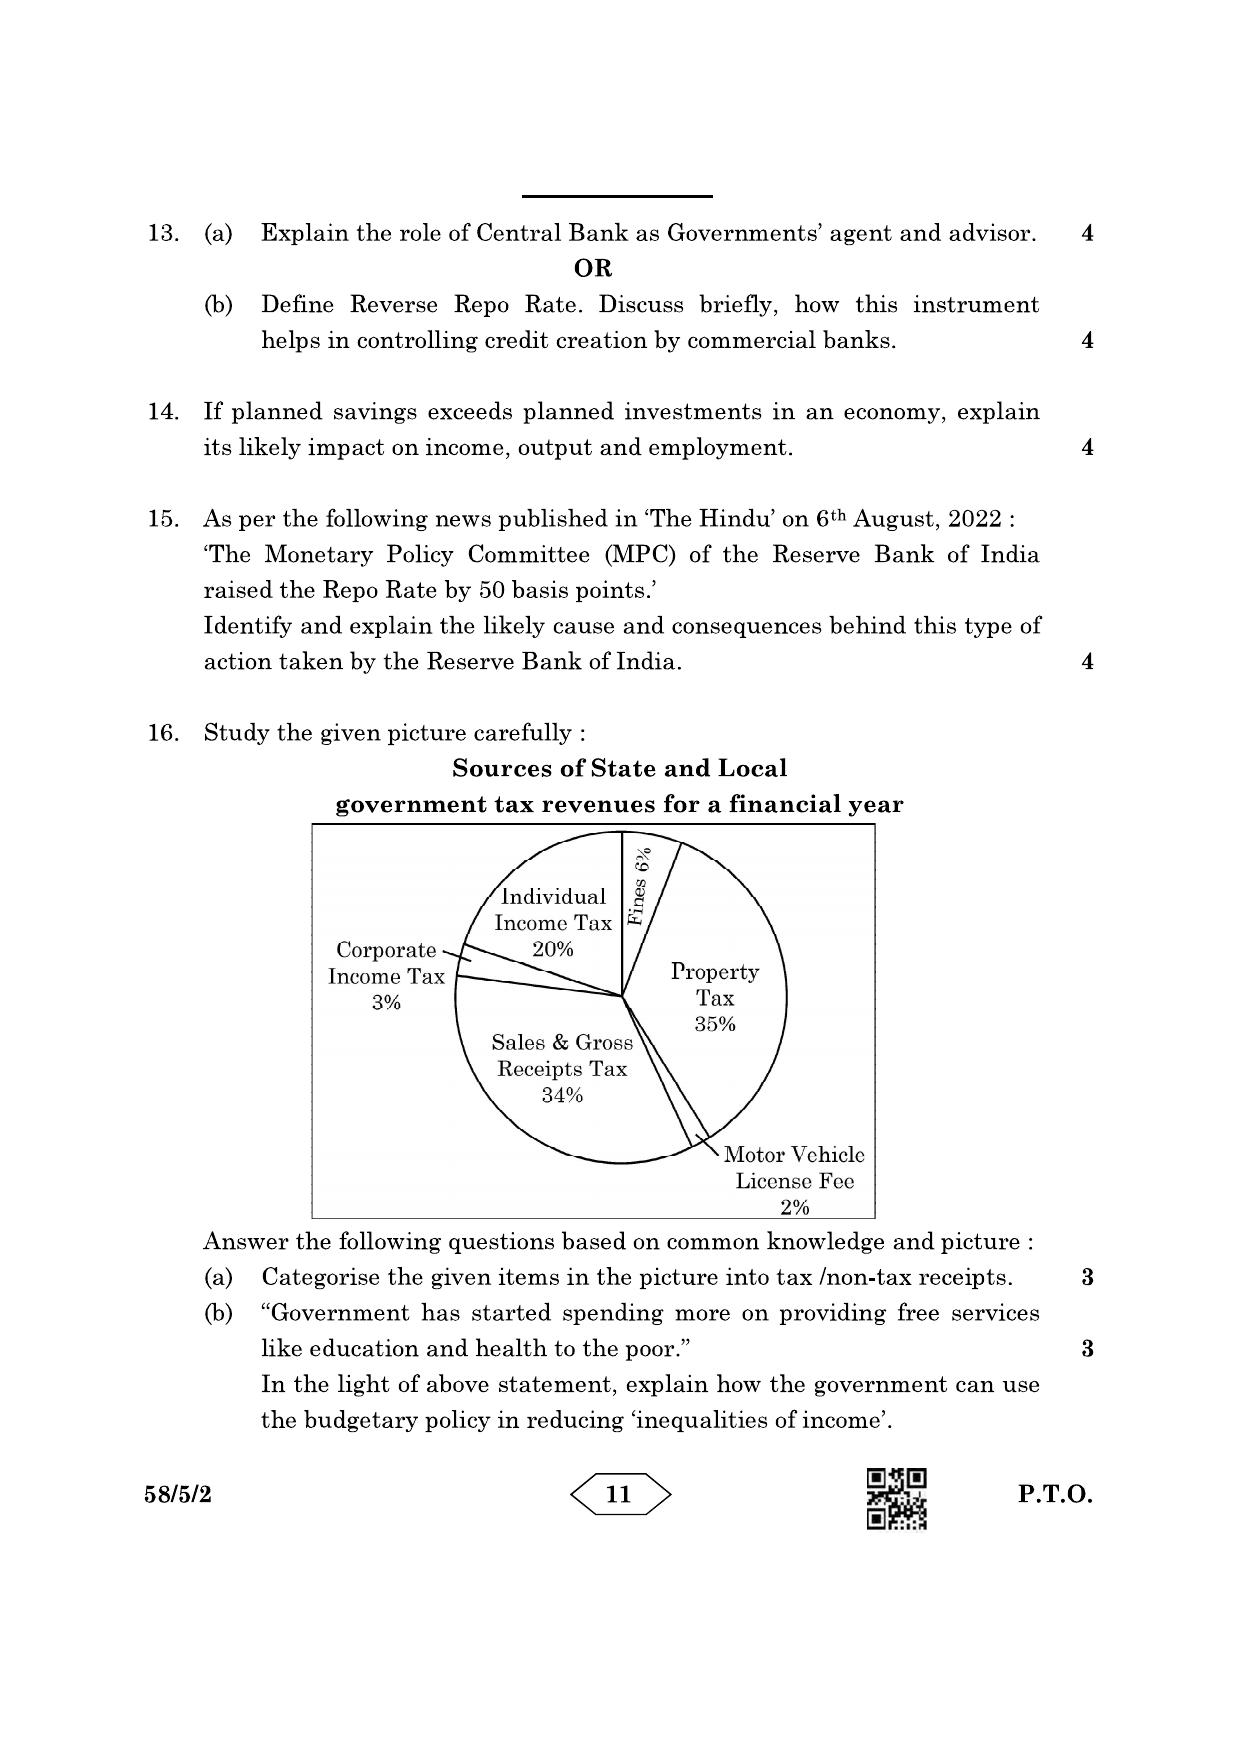 CBSE Class 12 58-5-2 Economics 2023 Question Paper - Page 11